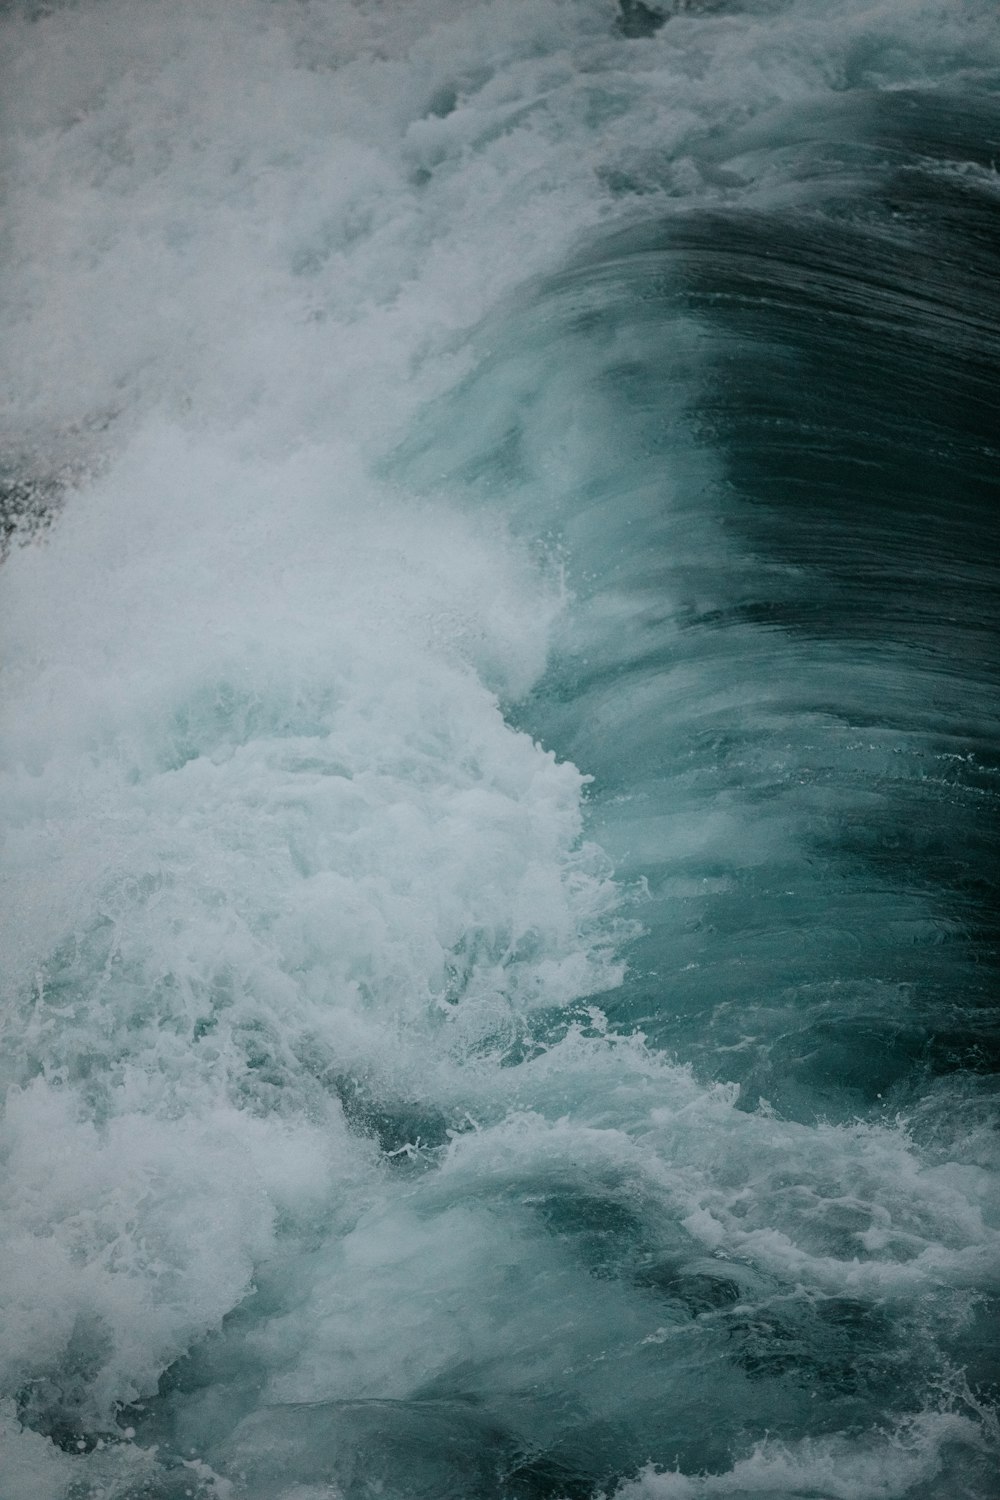 海の波のタイムラプス撮影